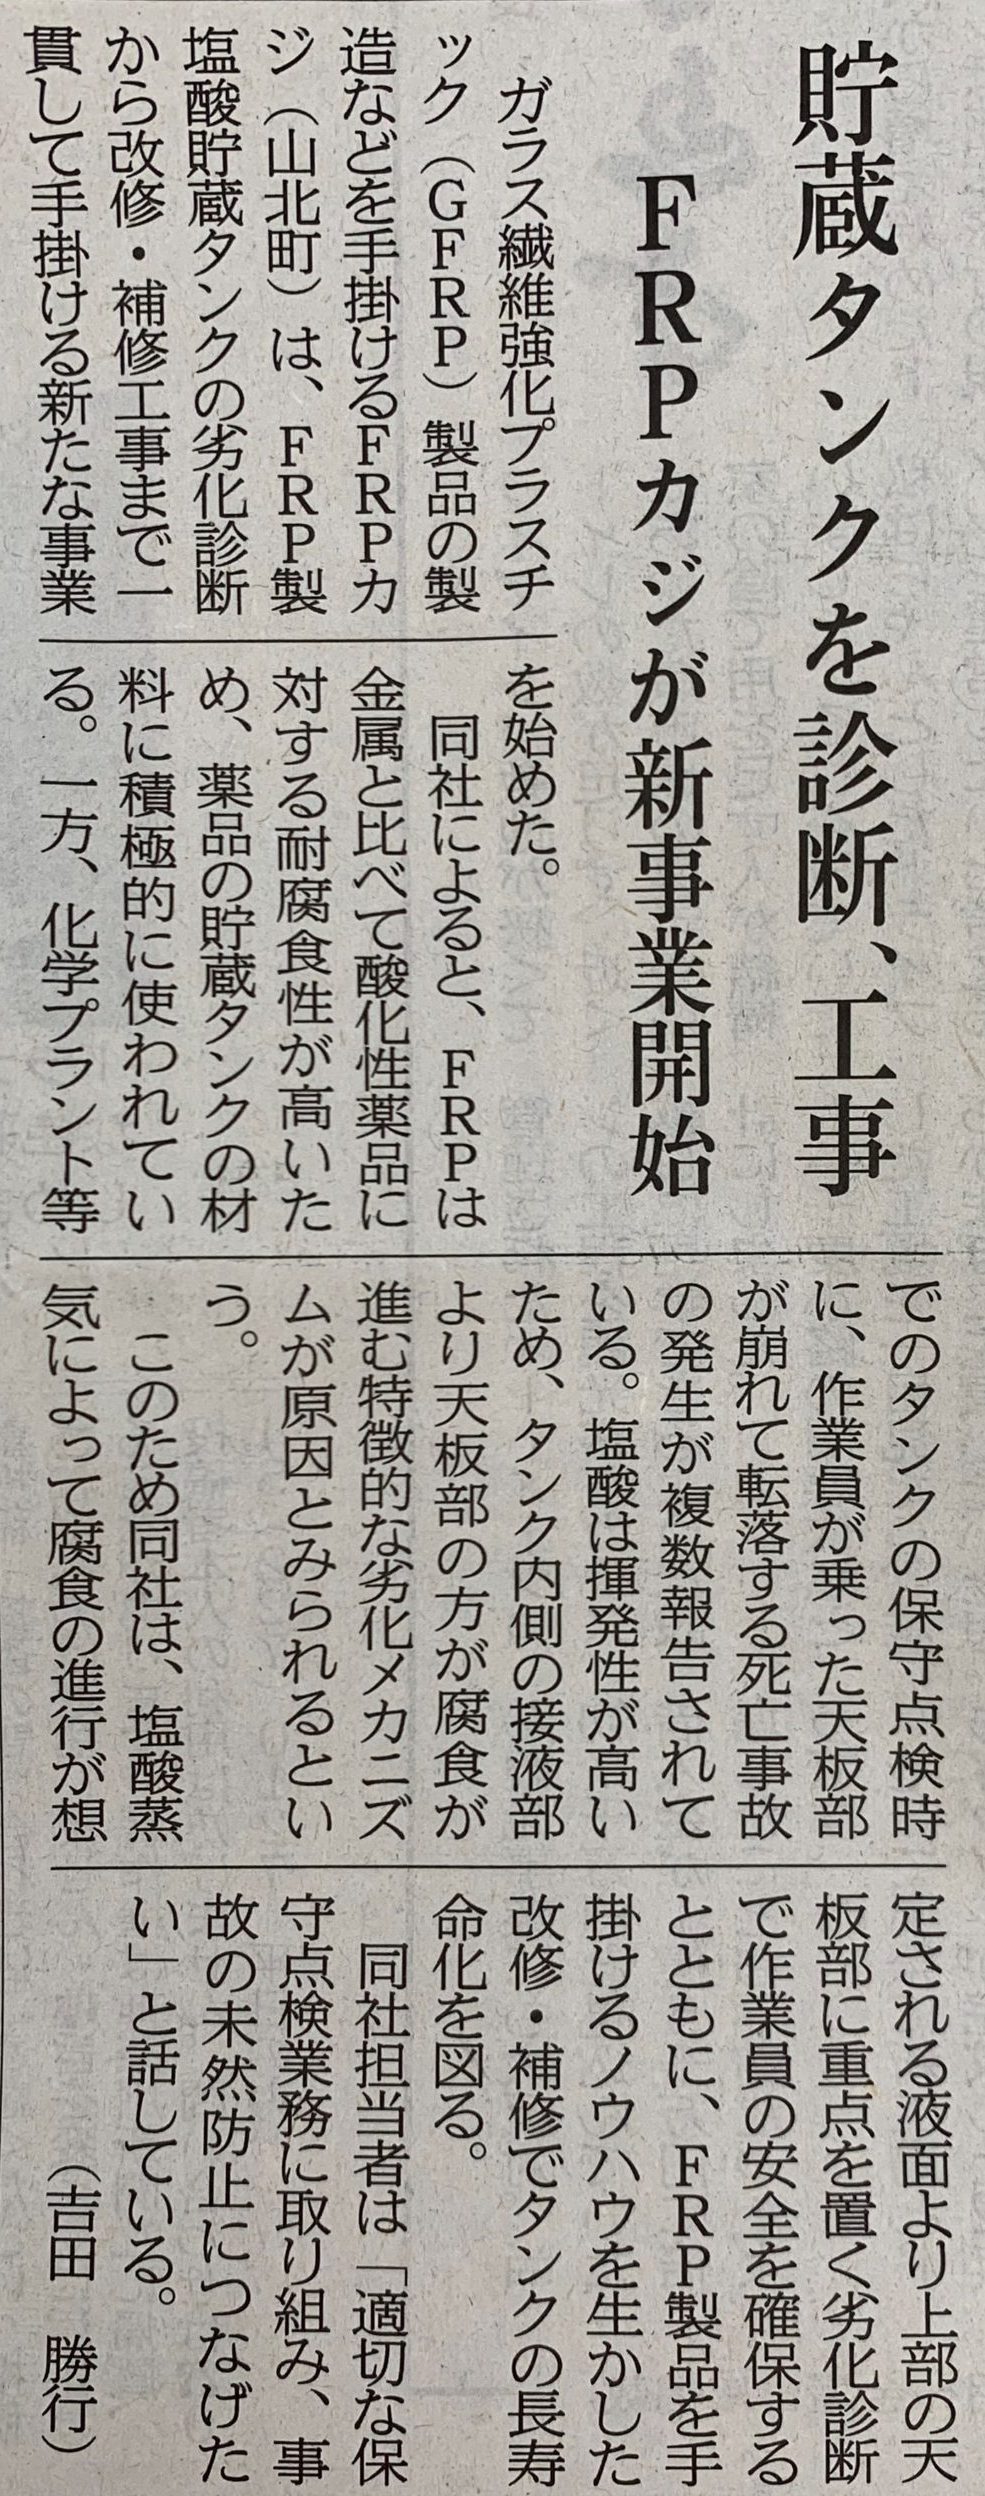 神奈川新聞にて塩酸貯槽崩壊対策